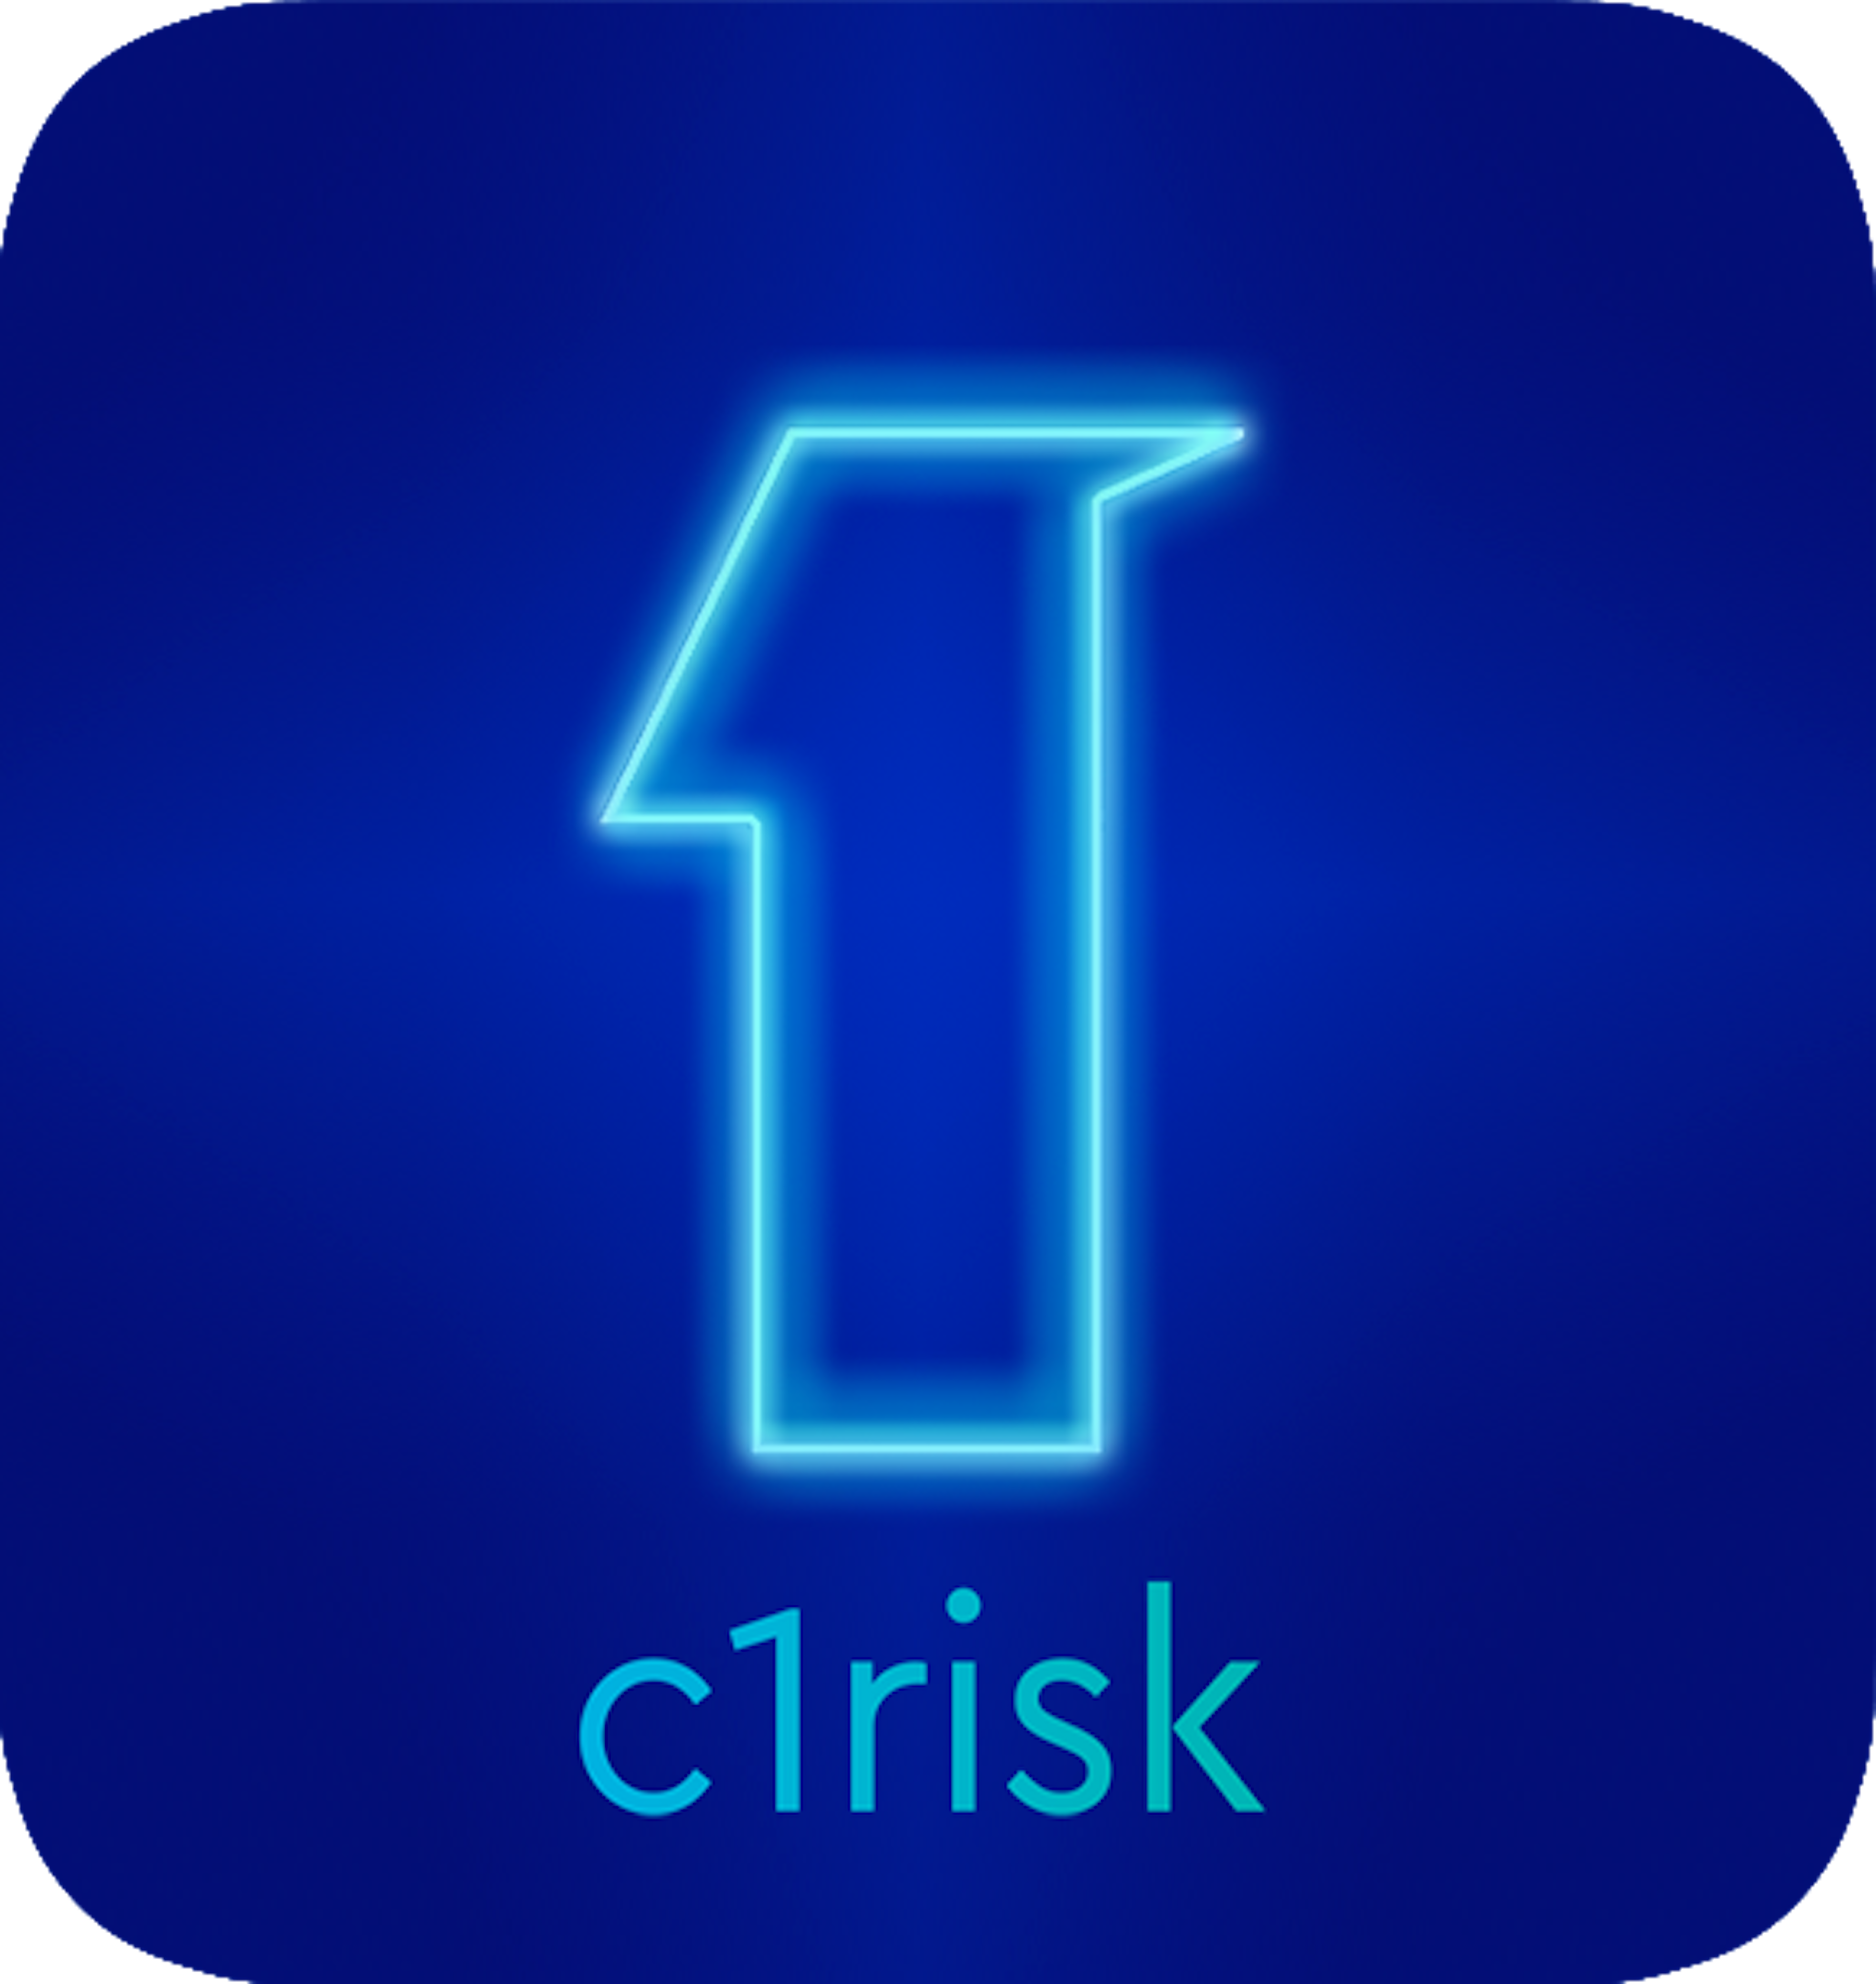 C1Risk Logo